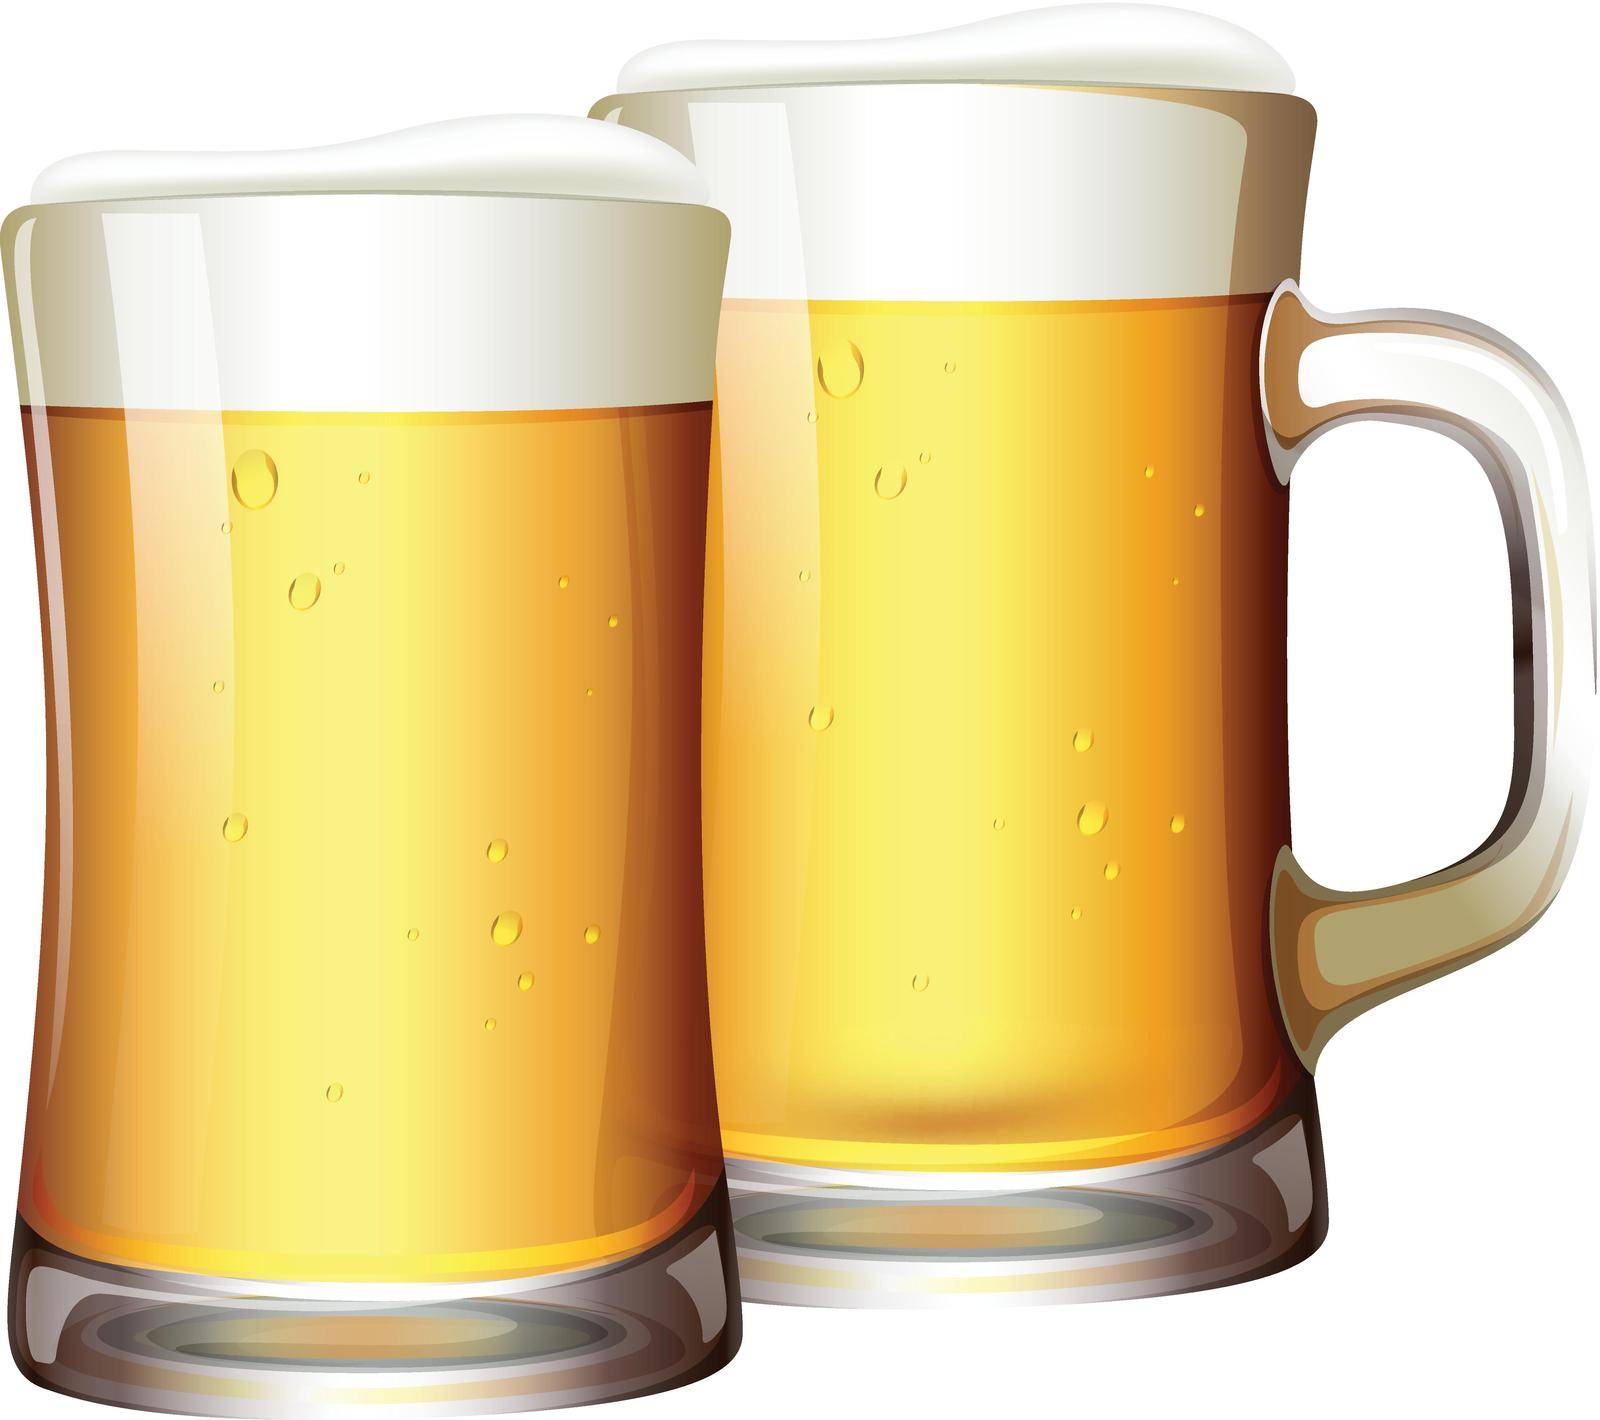 A Set of Beers in Mug by iimages